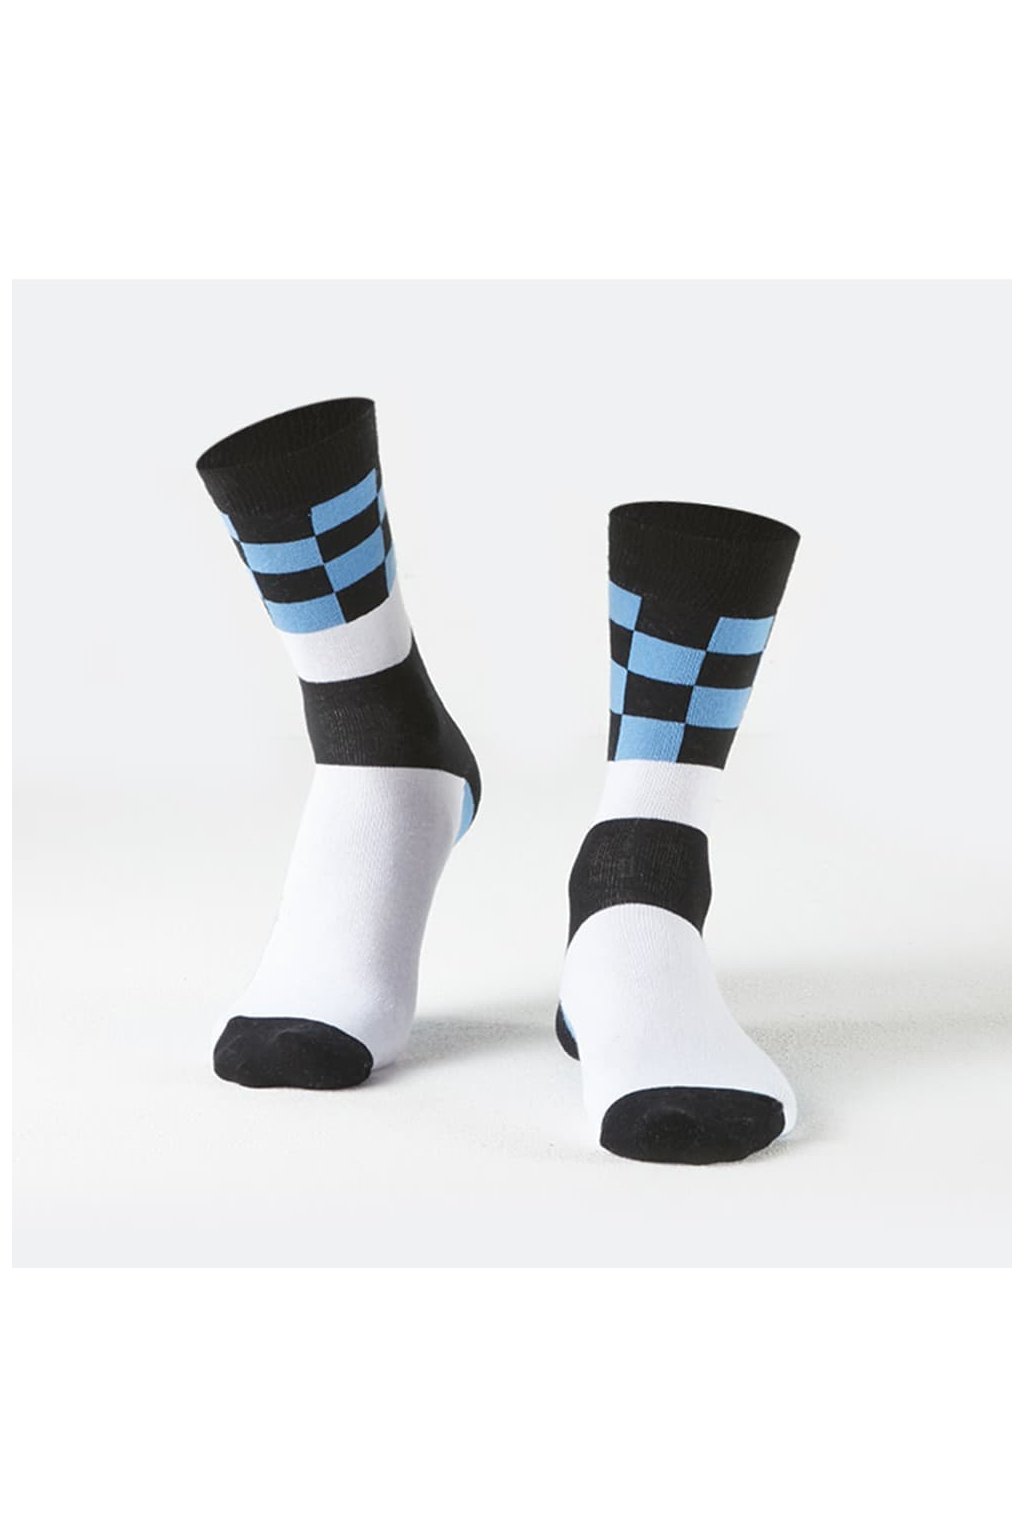 Pásnké klasické ponožky s tříbarevným vzorem